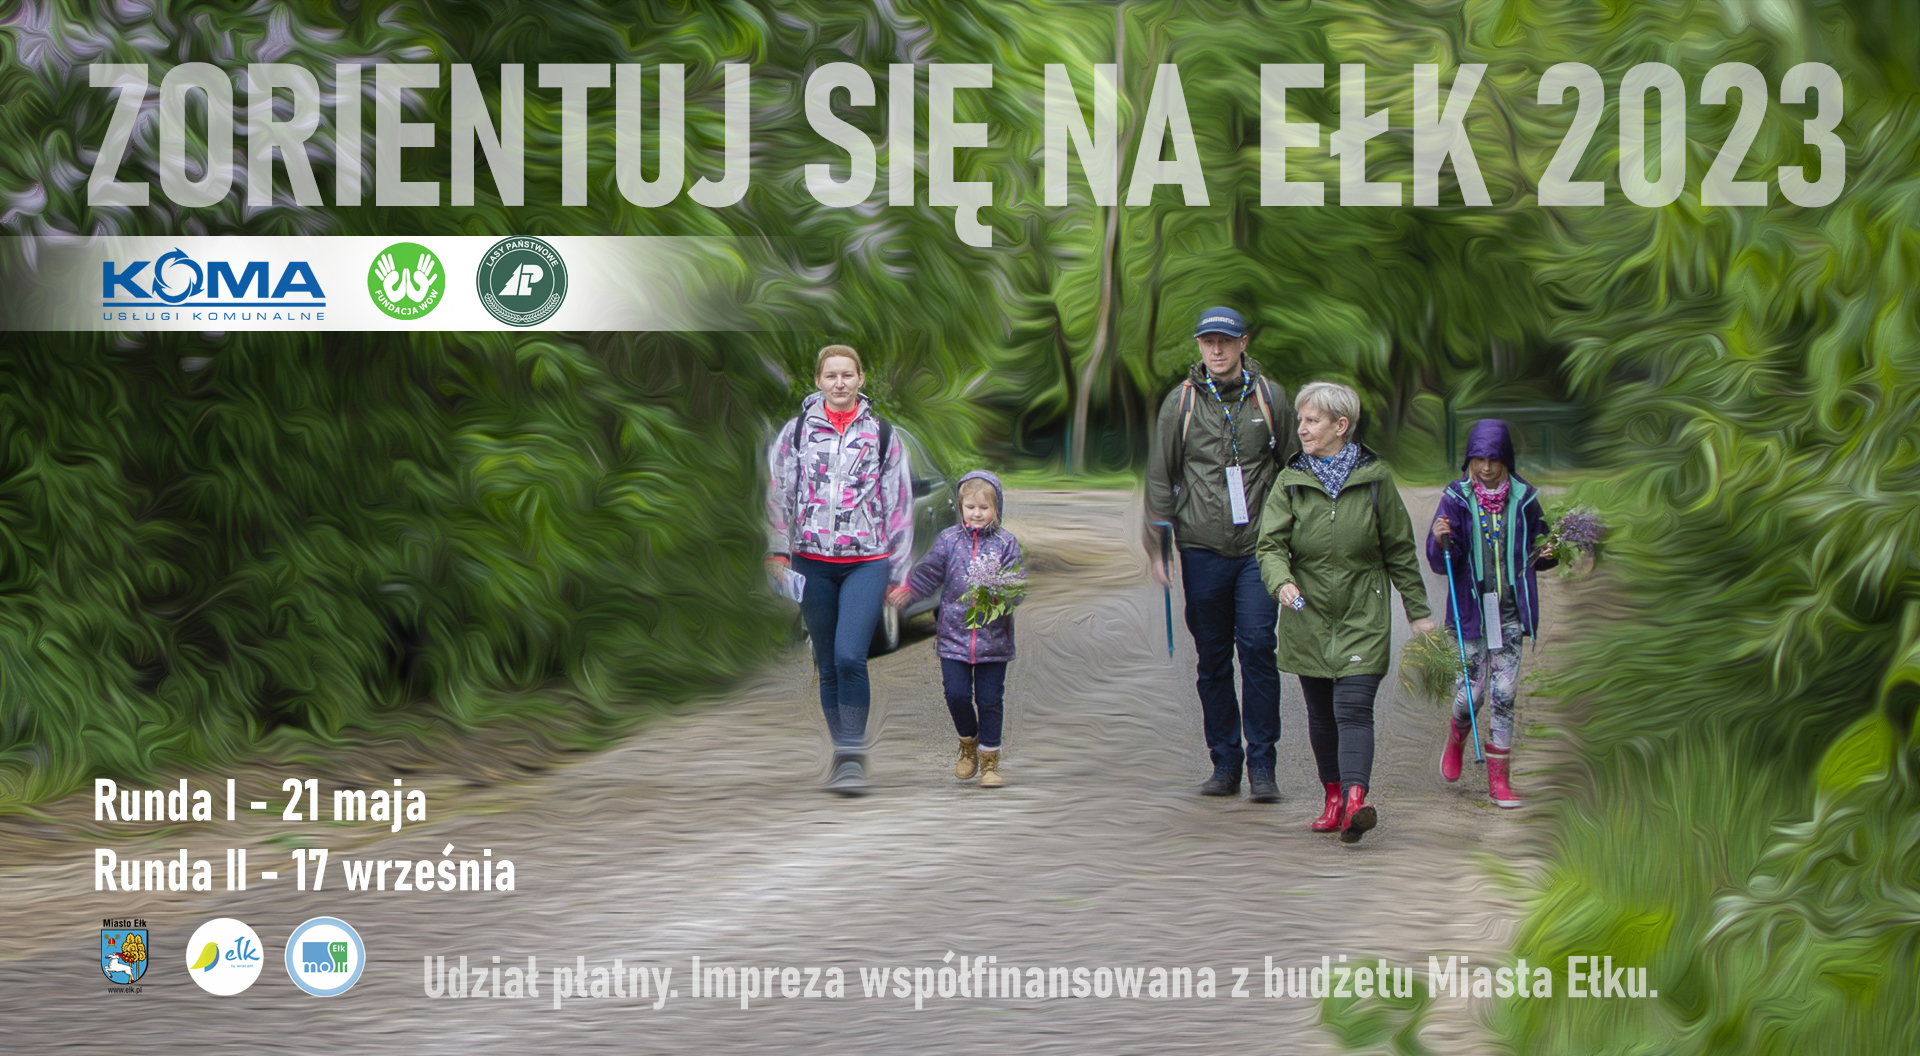 Ориентируйтесь на II тур Ełk – регистрация только до 13 сентября